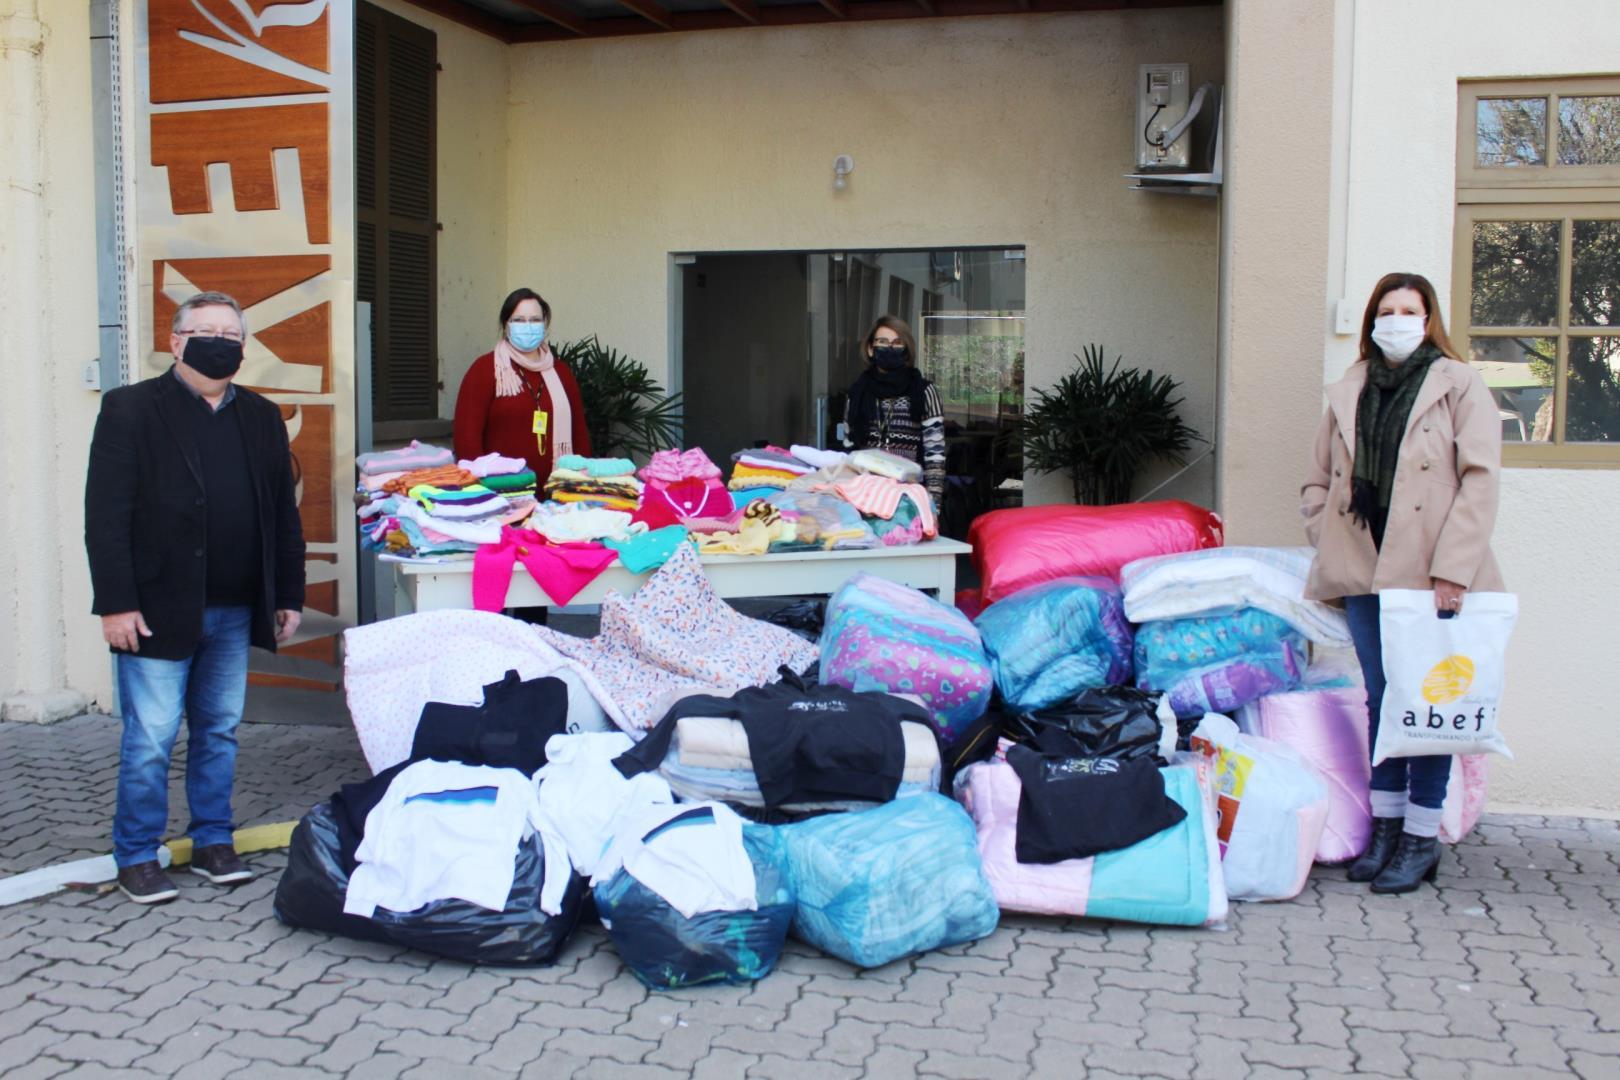 Grupo Ellos doa mais de 1700 peças de roupas e cobertas para a ABEFI